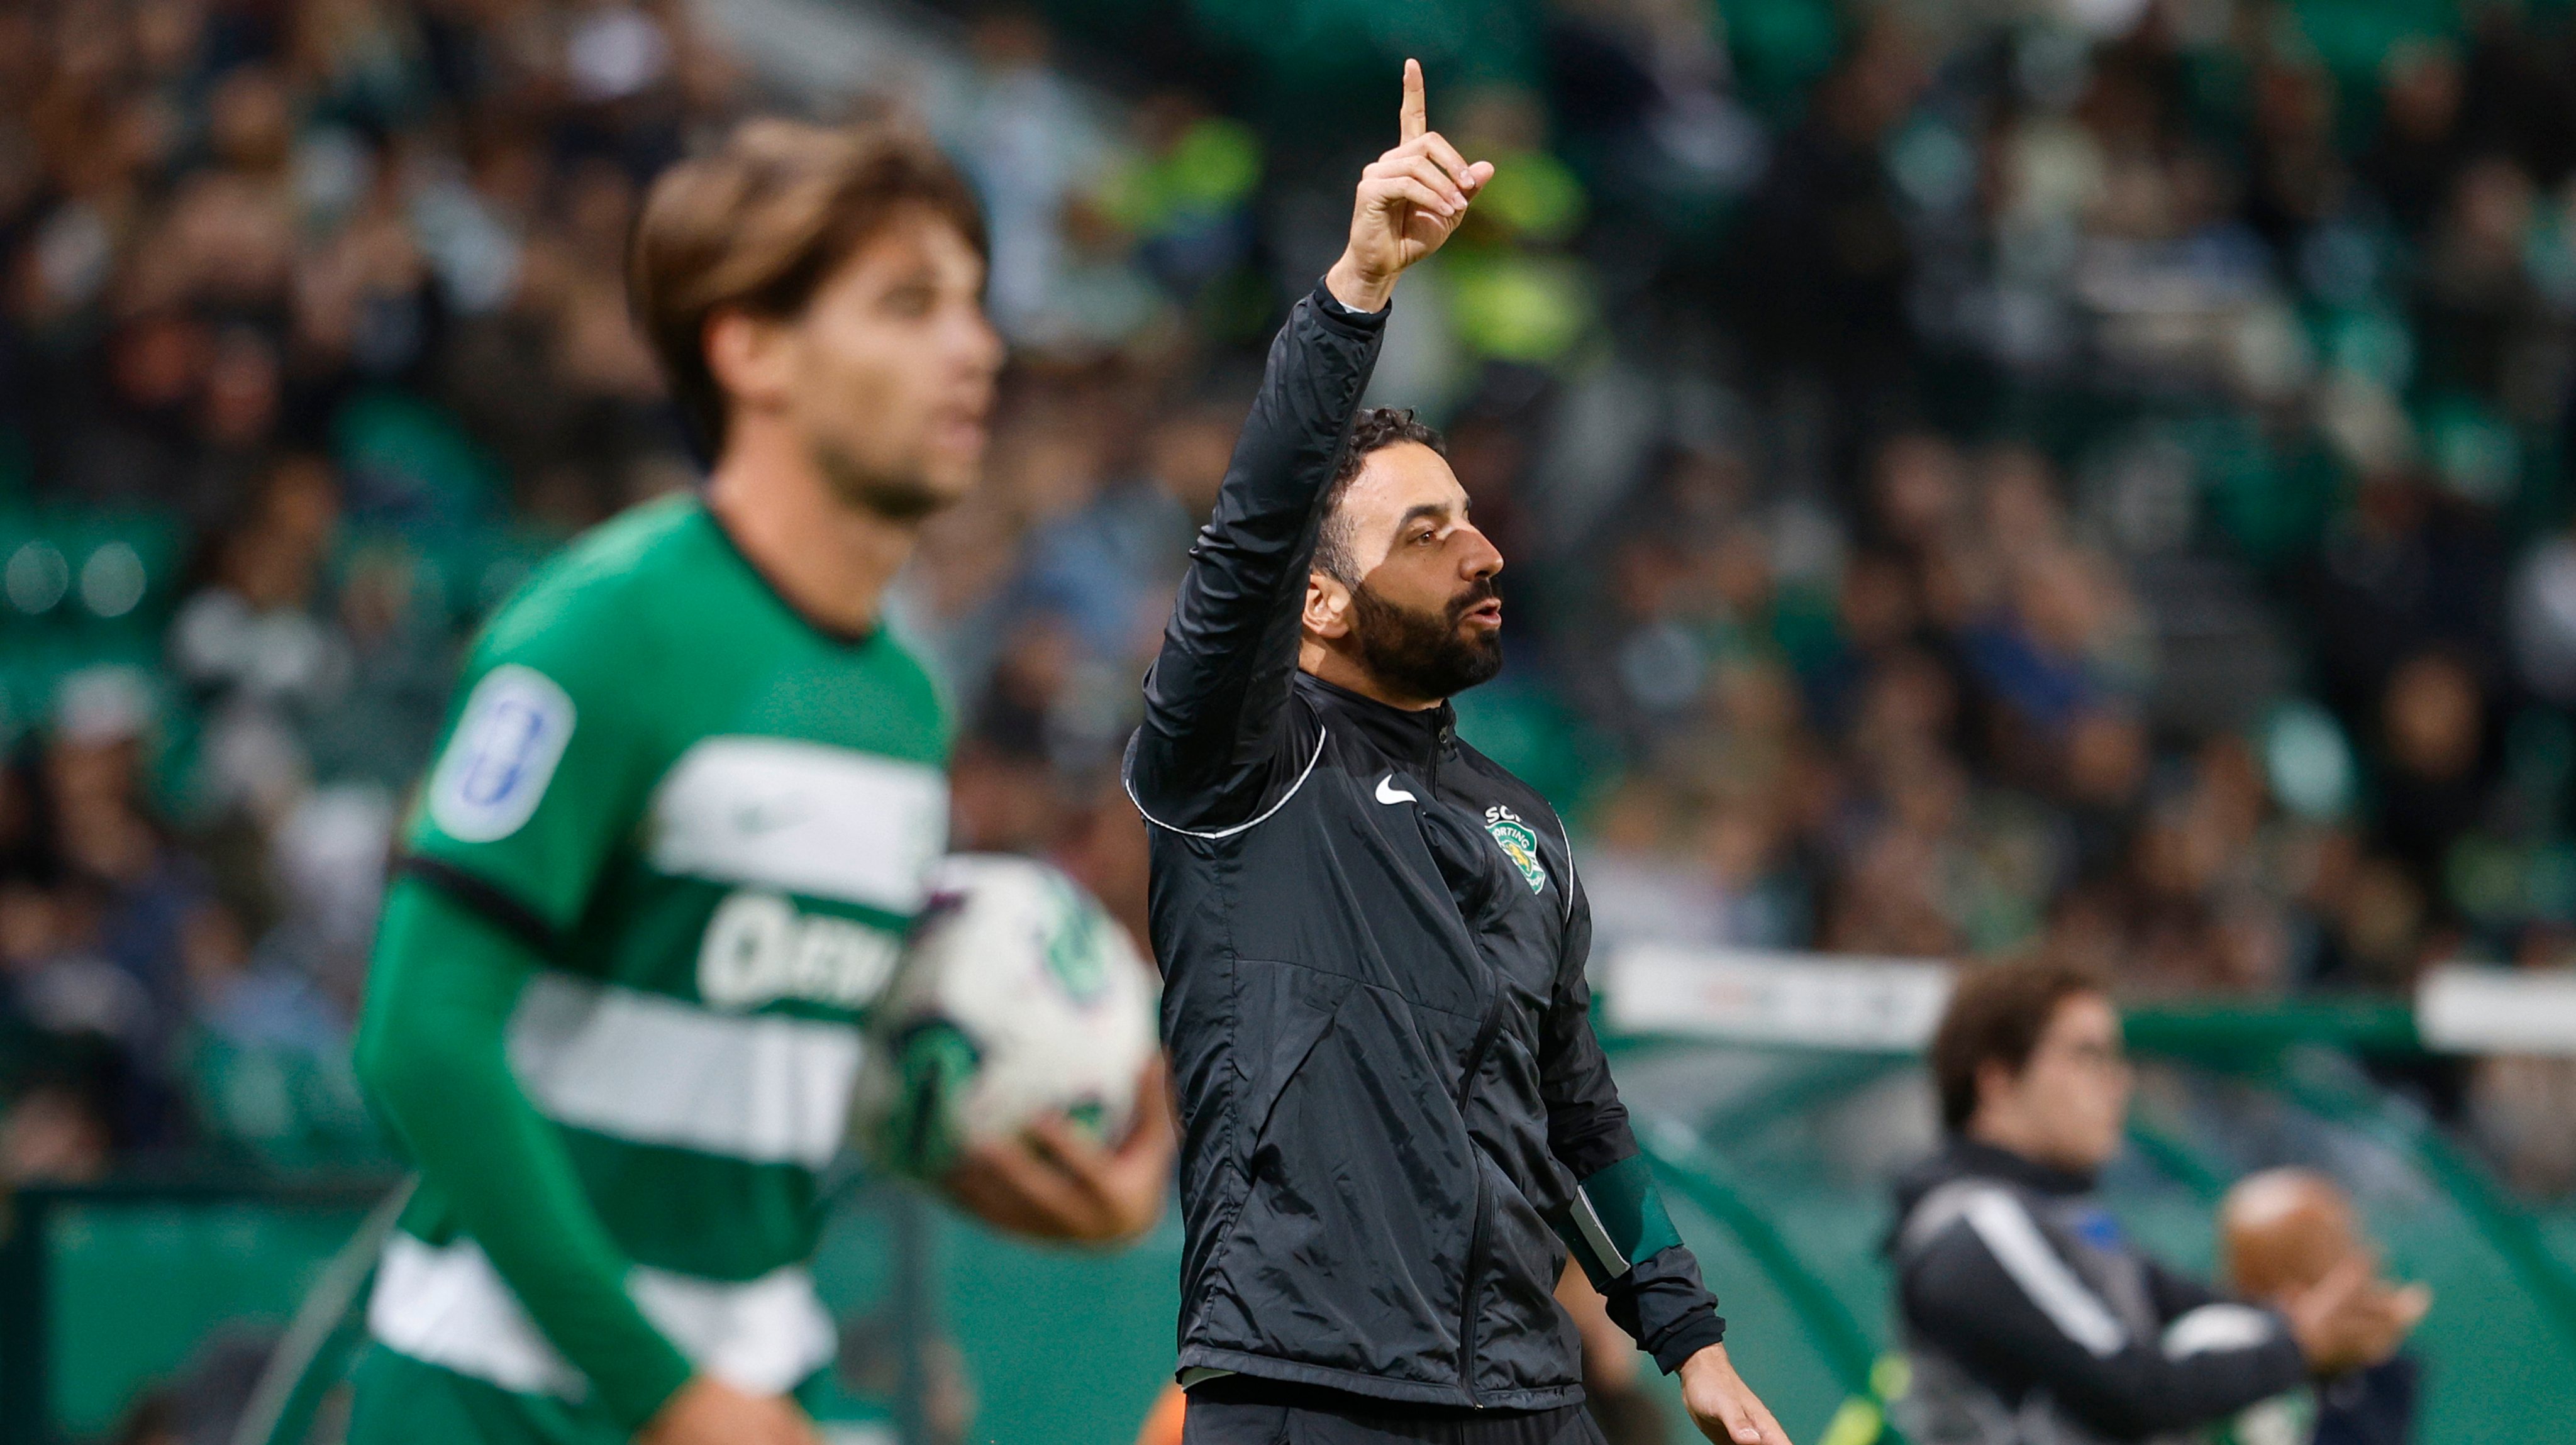 Técnico comentou a possível mudança após a vitória do Sporting por 4-2 contra o Farense